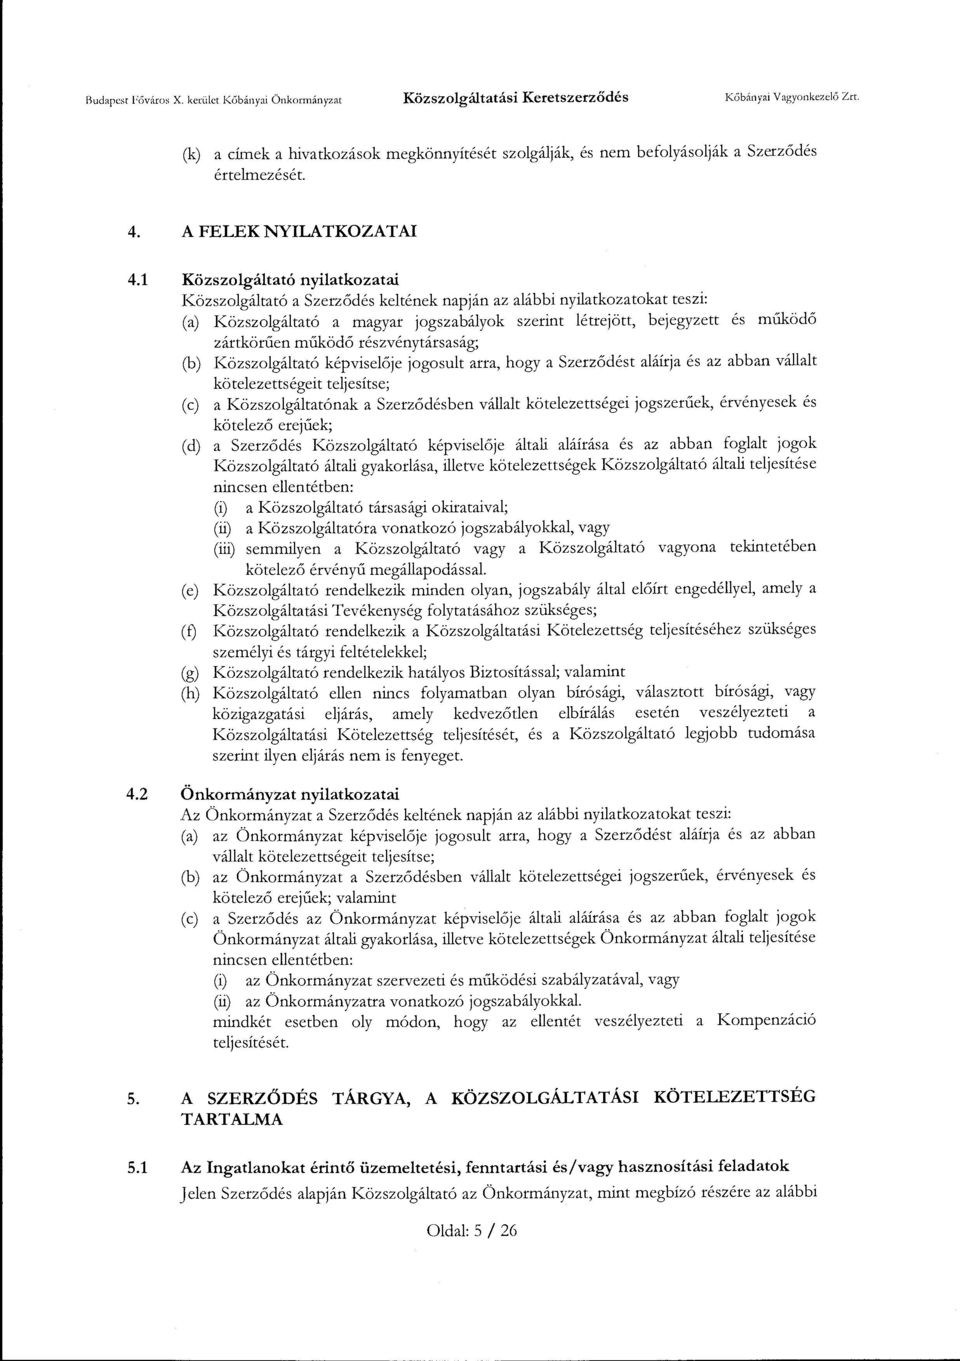 1 Közszolgáltató nyilatkozatai Közszolgáltató a Szerződés keltének napján az alábbi nyilatkozatokat teszi: (a) Közszolgáltató a magyar jogszabályok szerint létrejött, bejegyzett és működő zártkötűen